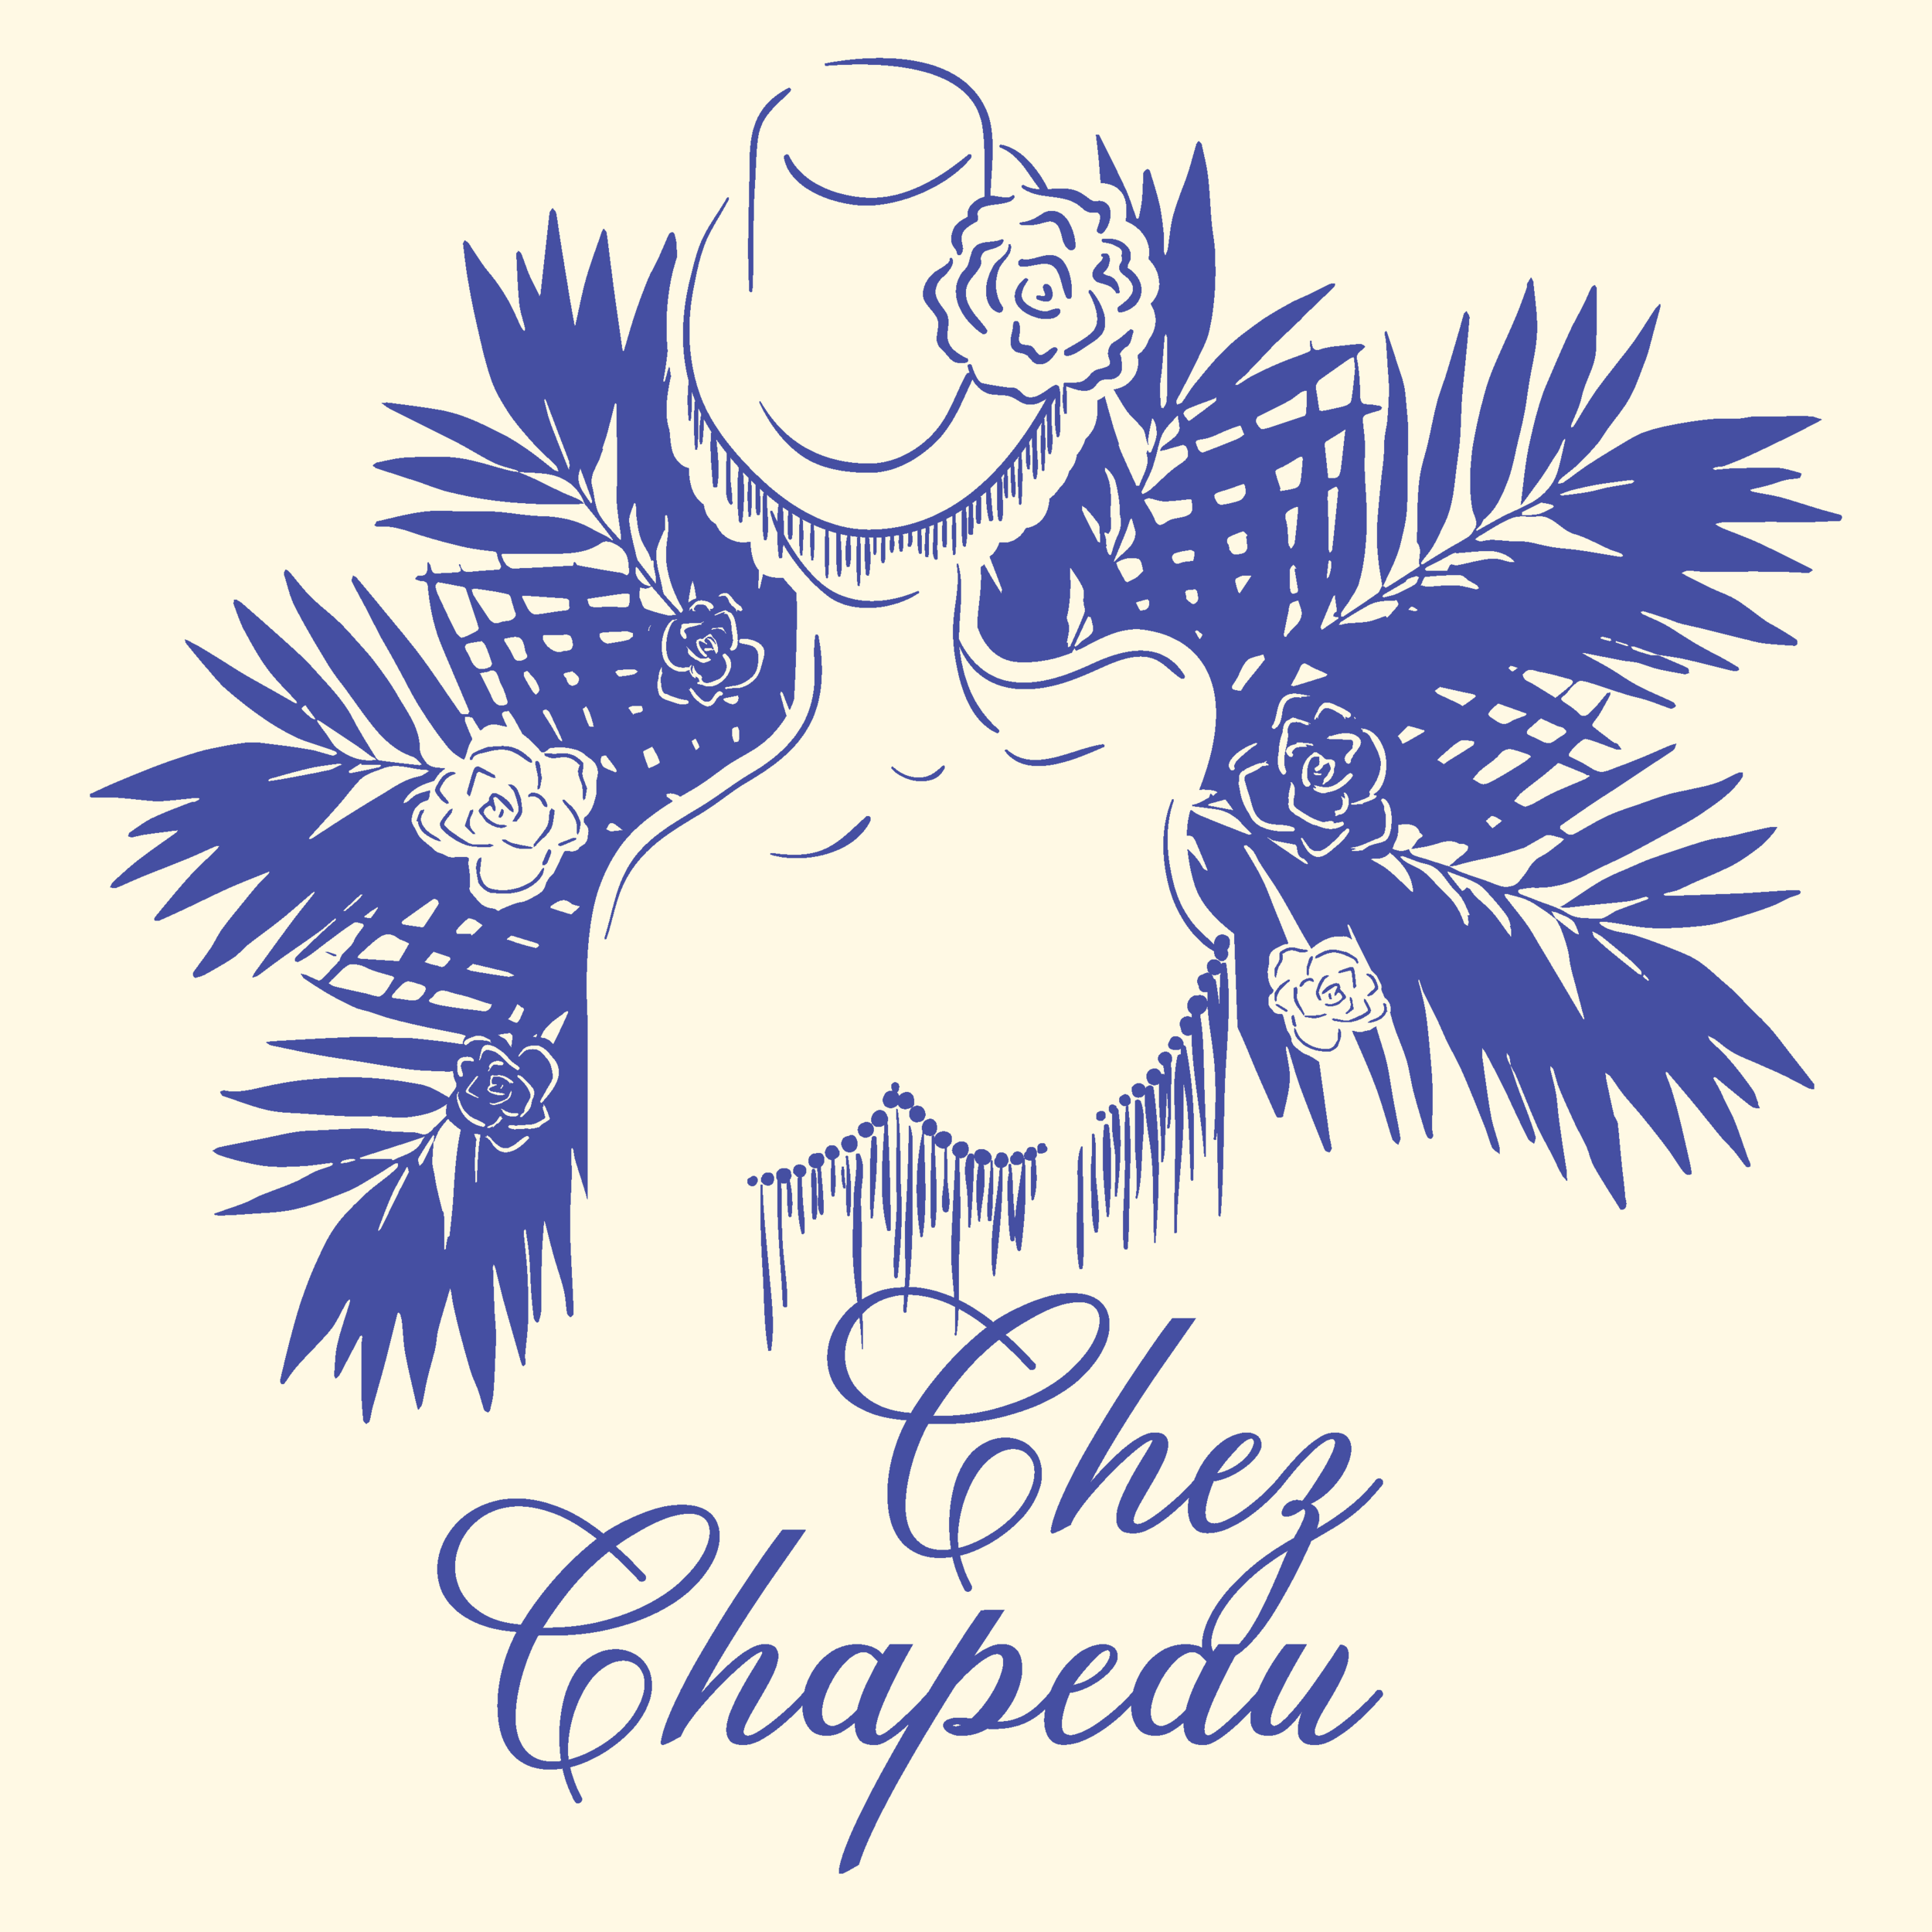 CHEZ CHAPEAU